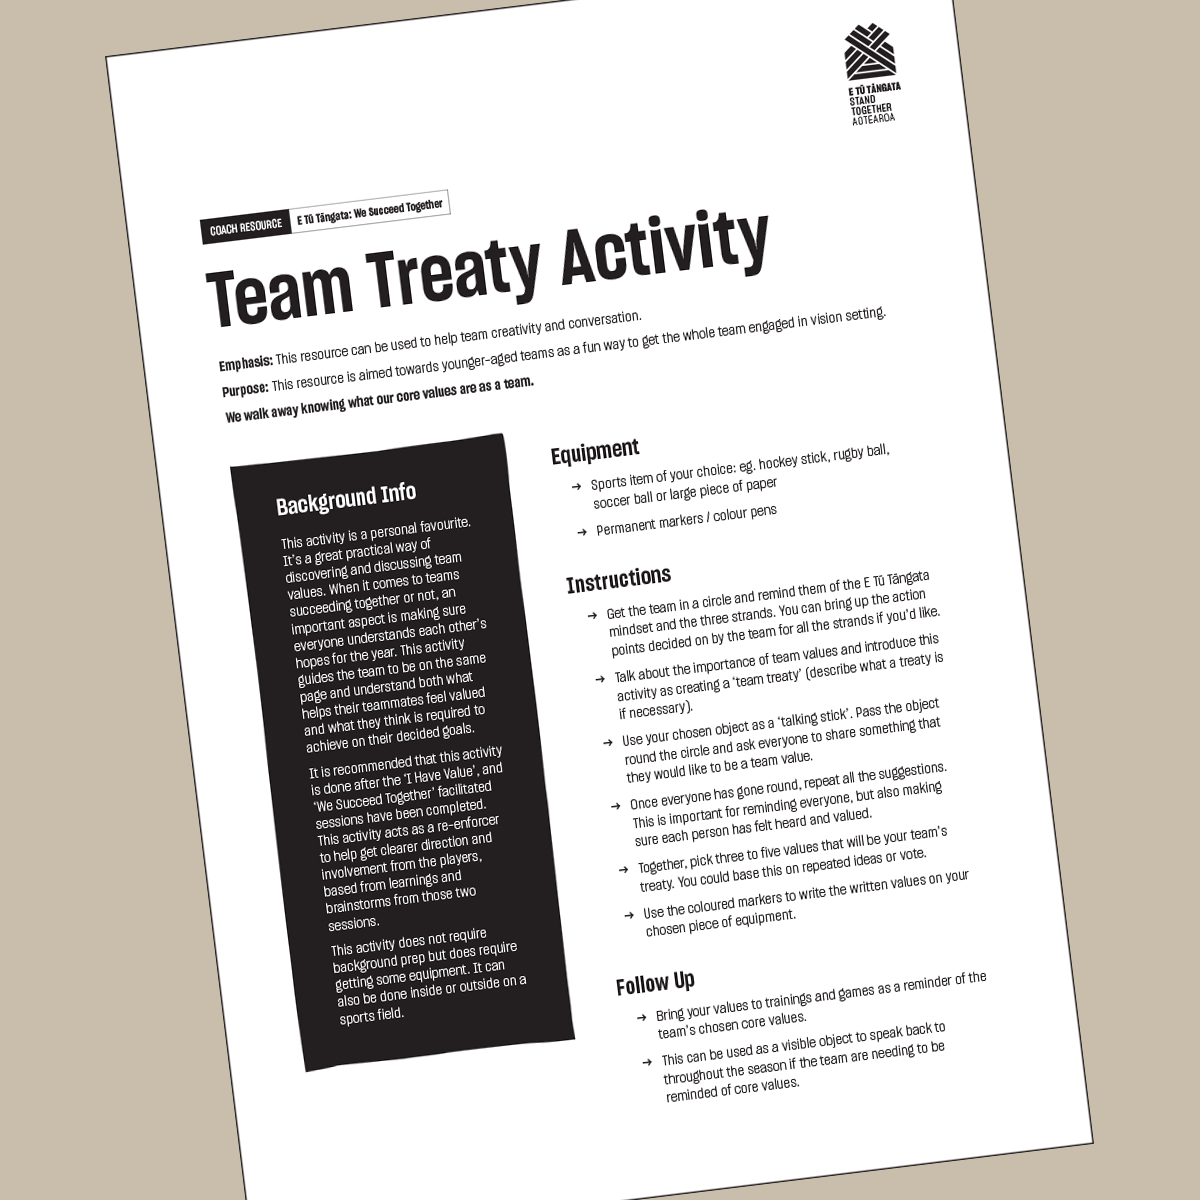 Team Treaty Activity